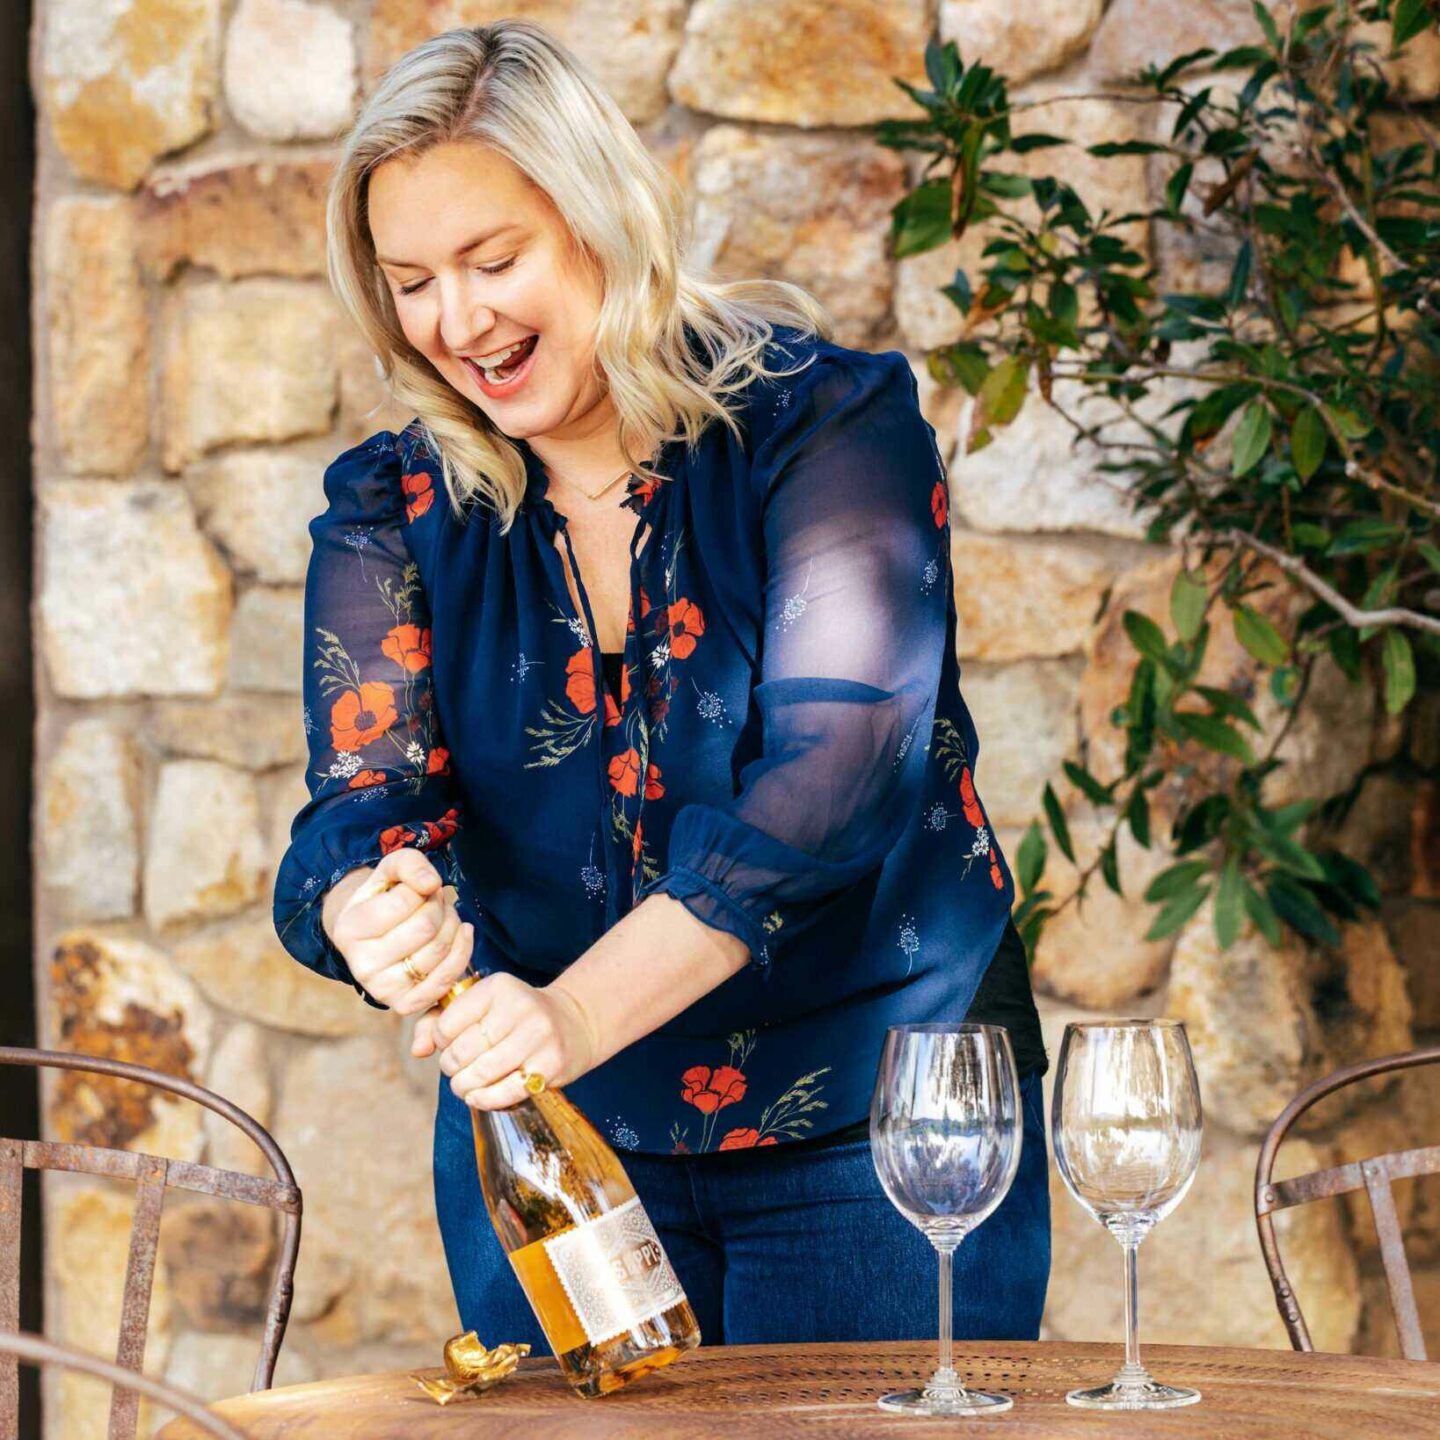 Kelsey Phelps, female winemaker of Seppi wines